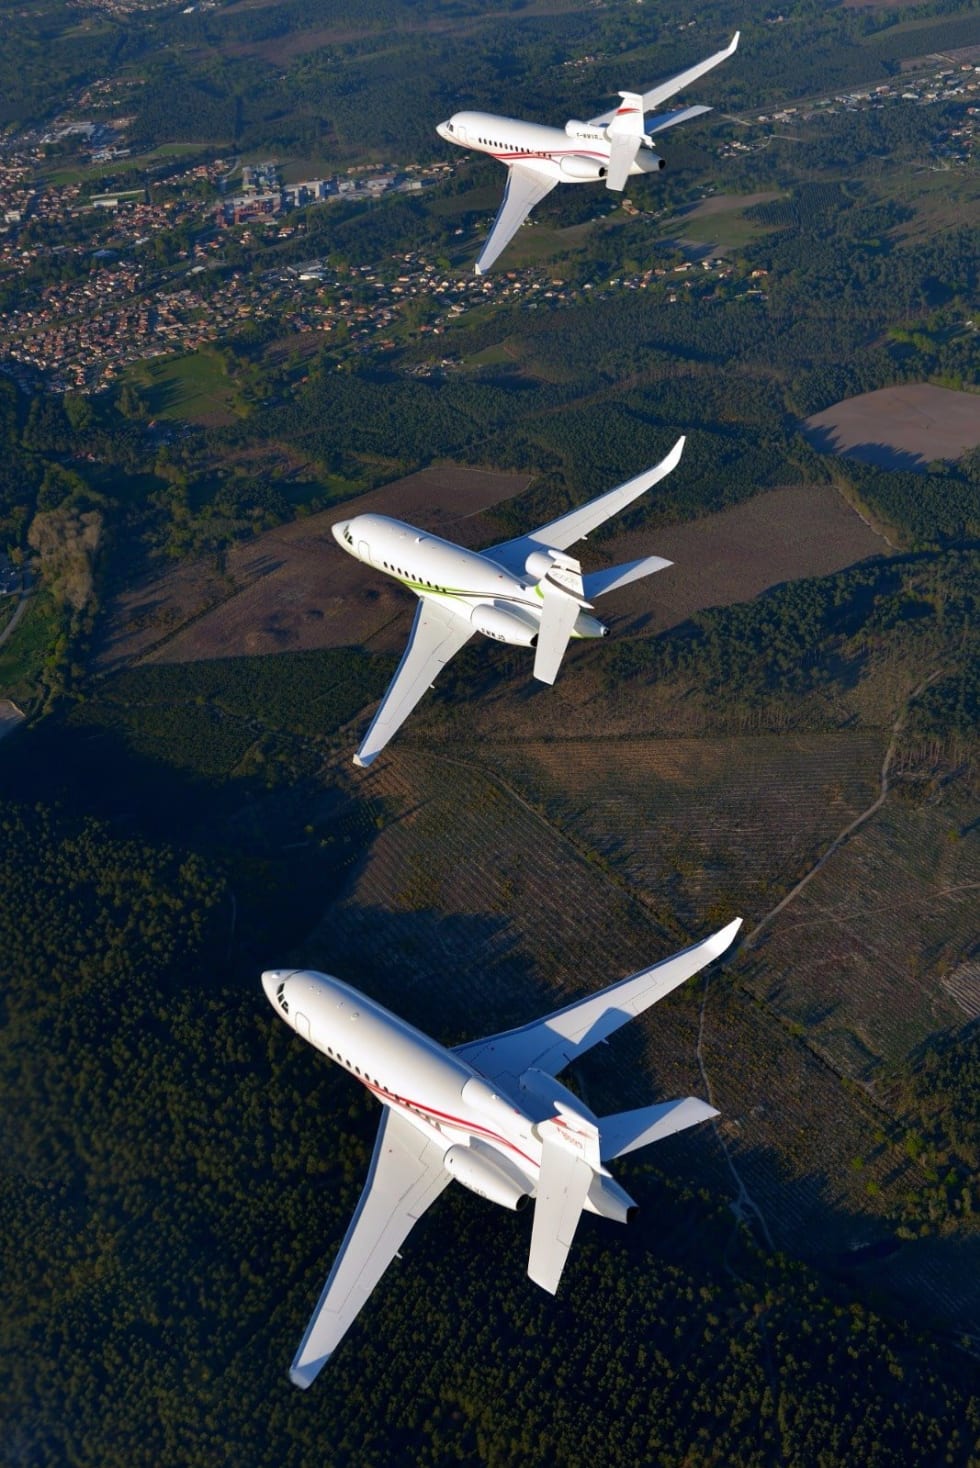 Falcon 7X, Falcon 2000S, et Falcon 900LX.